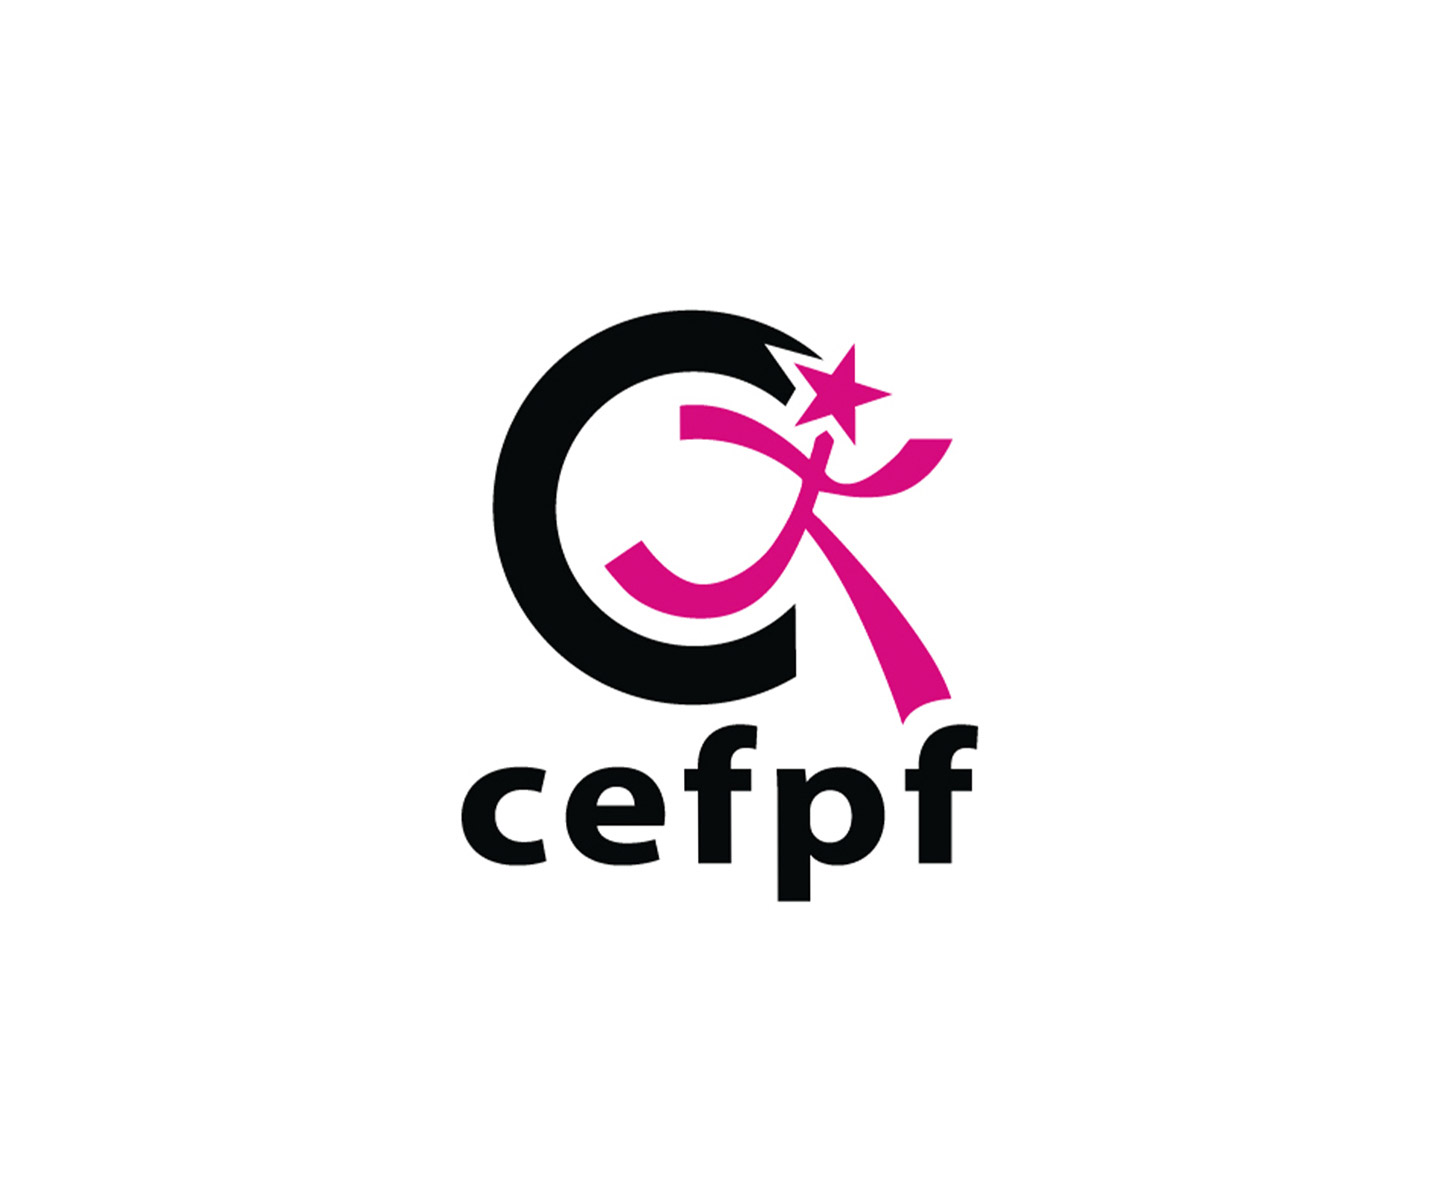 Cefpf